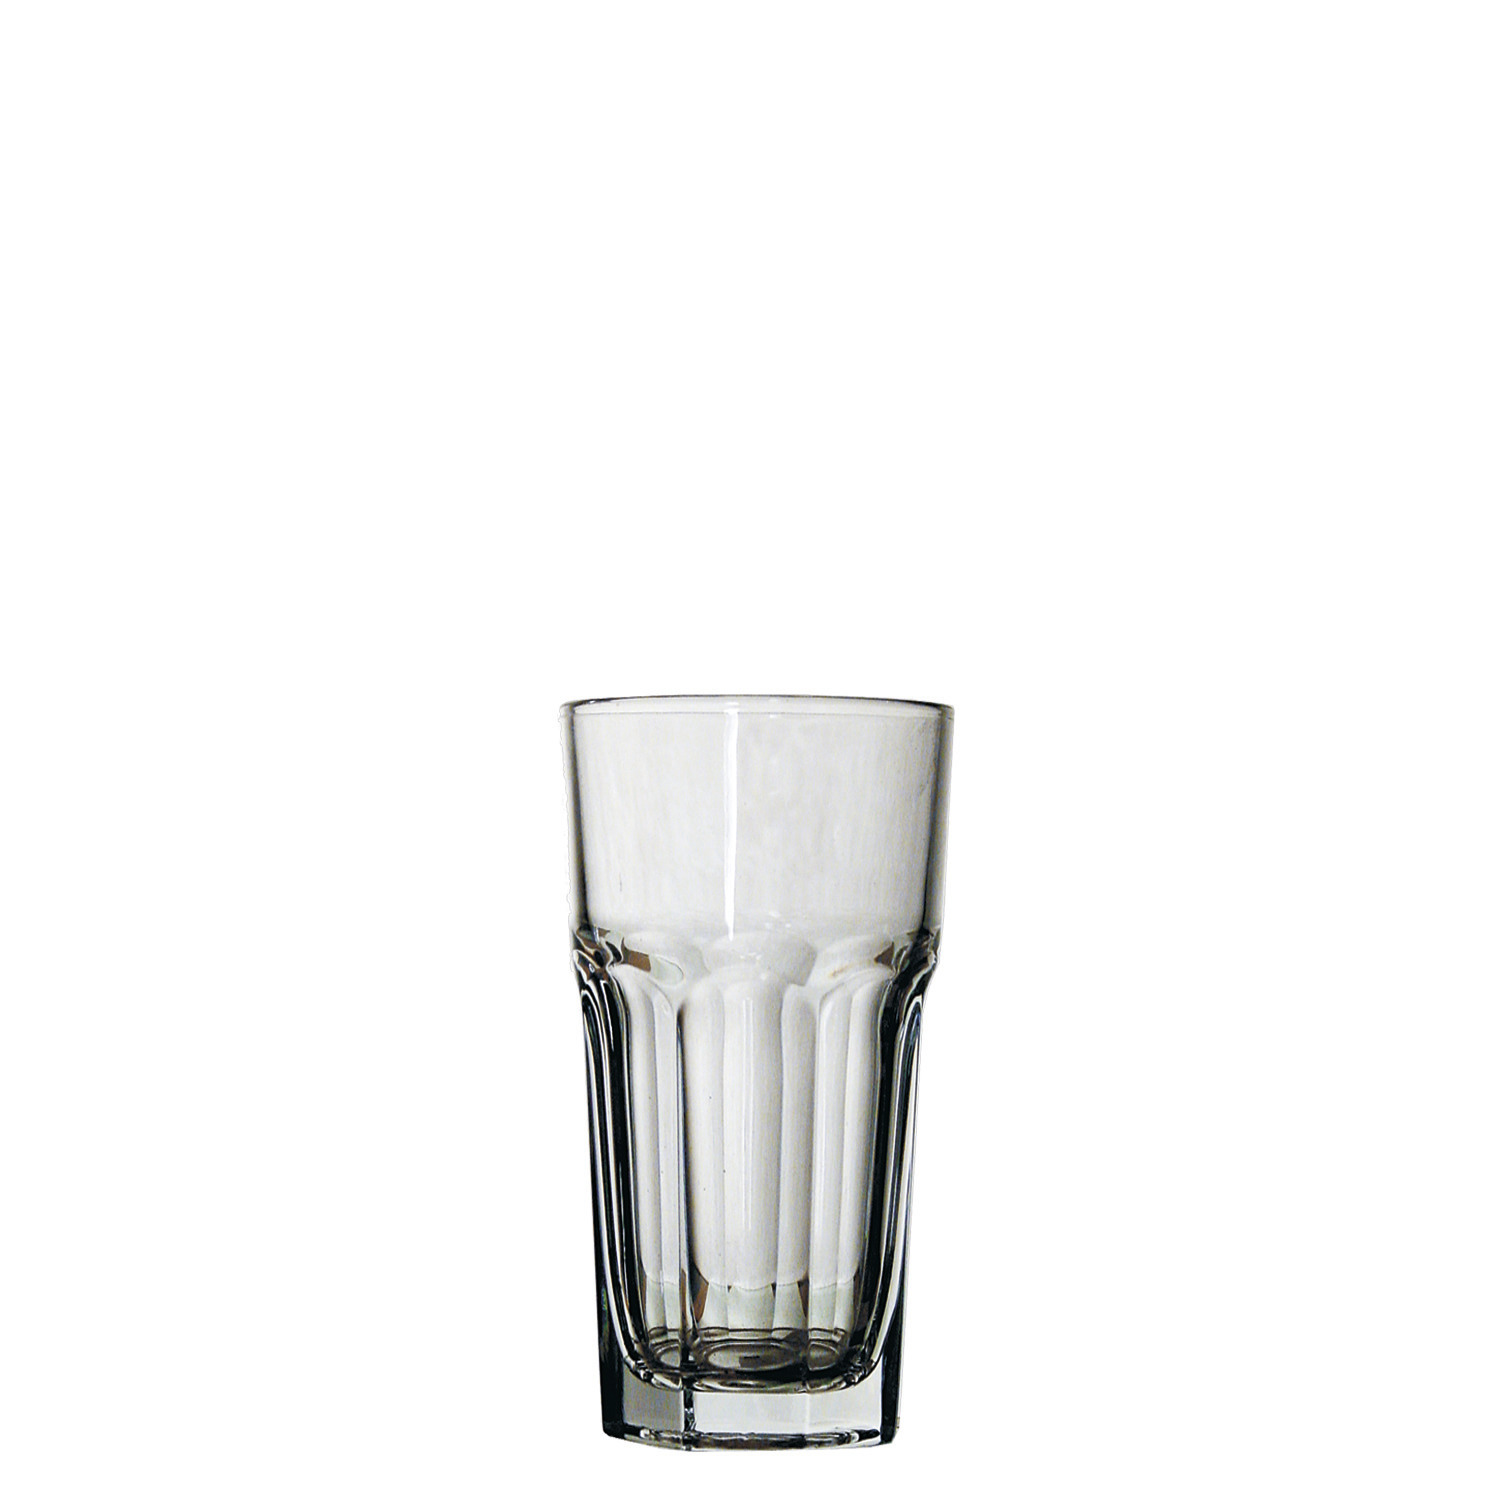 Longdrinkglas stapelbar 80 mm / 0,37 l transparent